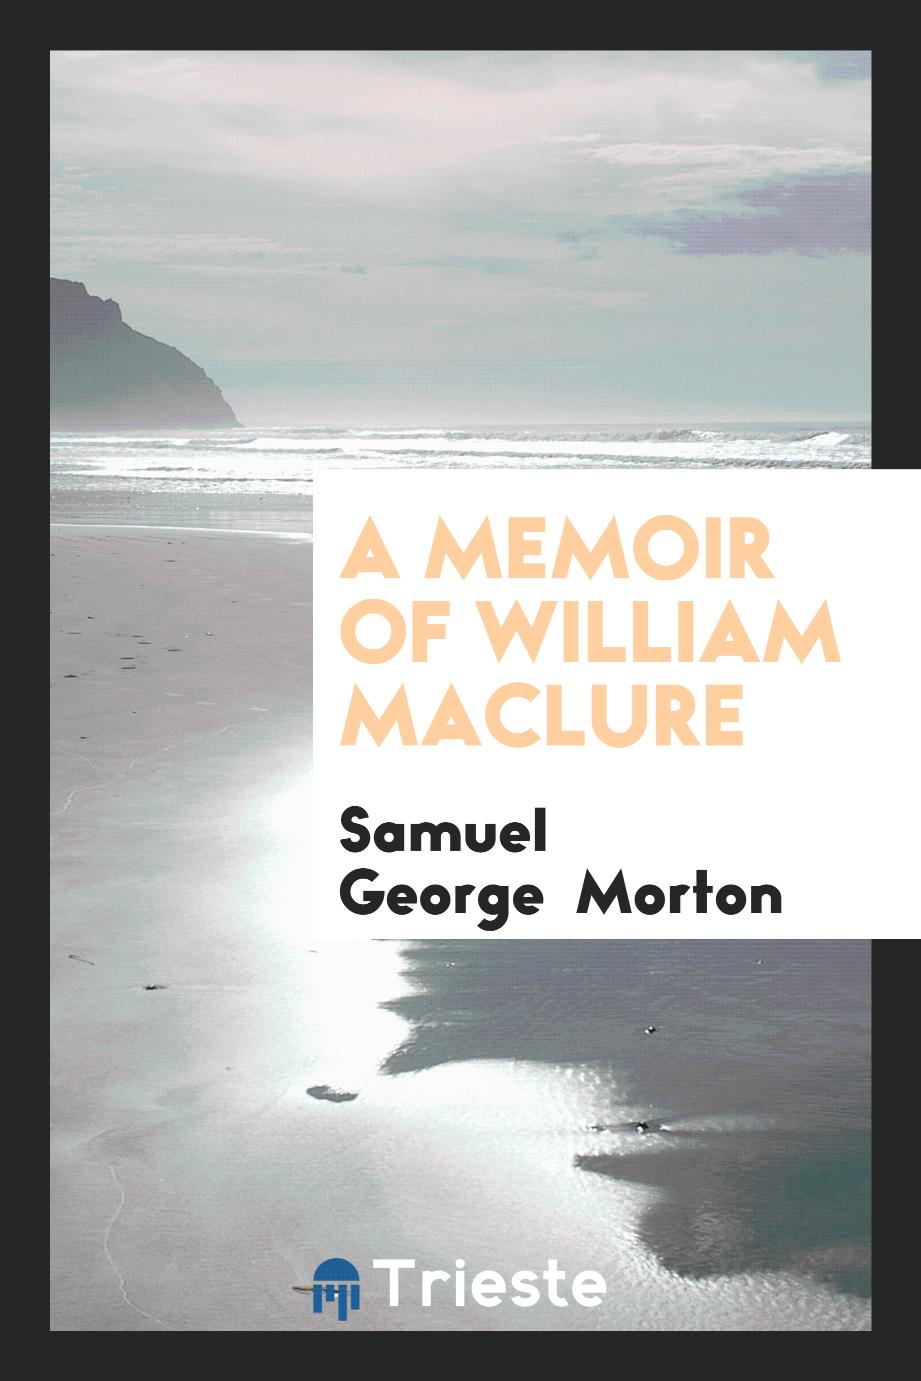 A memoir of William Maclure